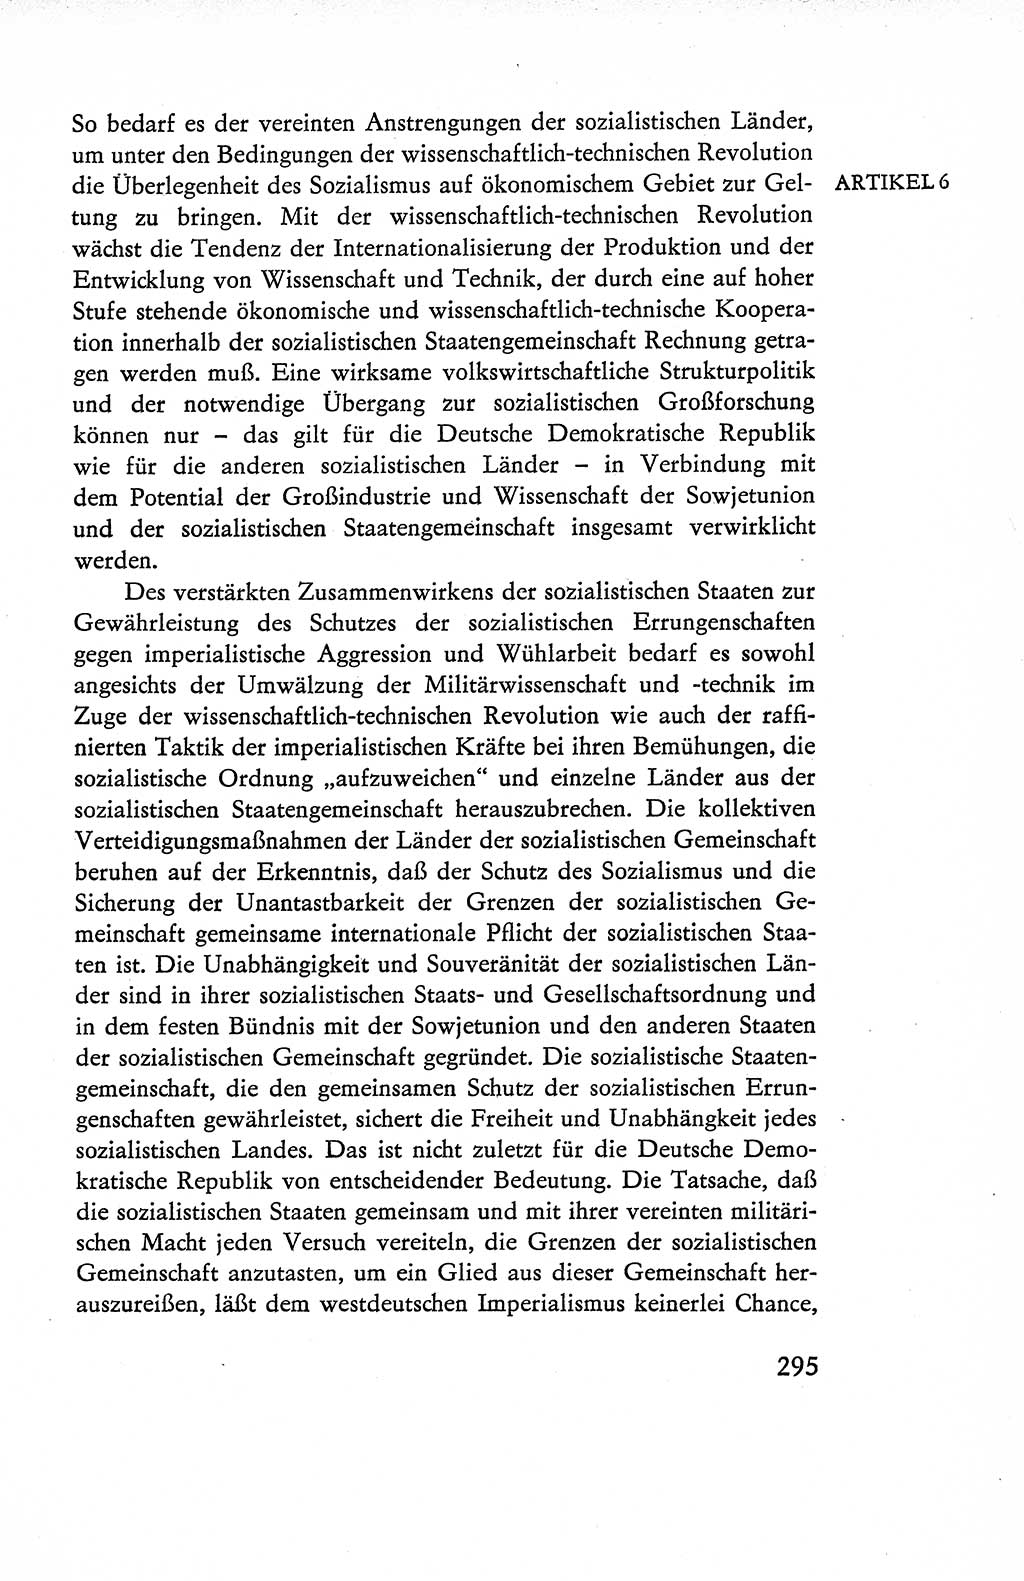 Verfassung der Deutschen Demokratischen Republik (DDR), Dokumente, Kommentar 1969, Band 1, Seite 295 (Verf. DDR Dok. Komm. 1969, Bd. 1, S. 295)